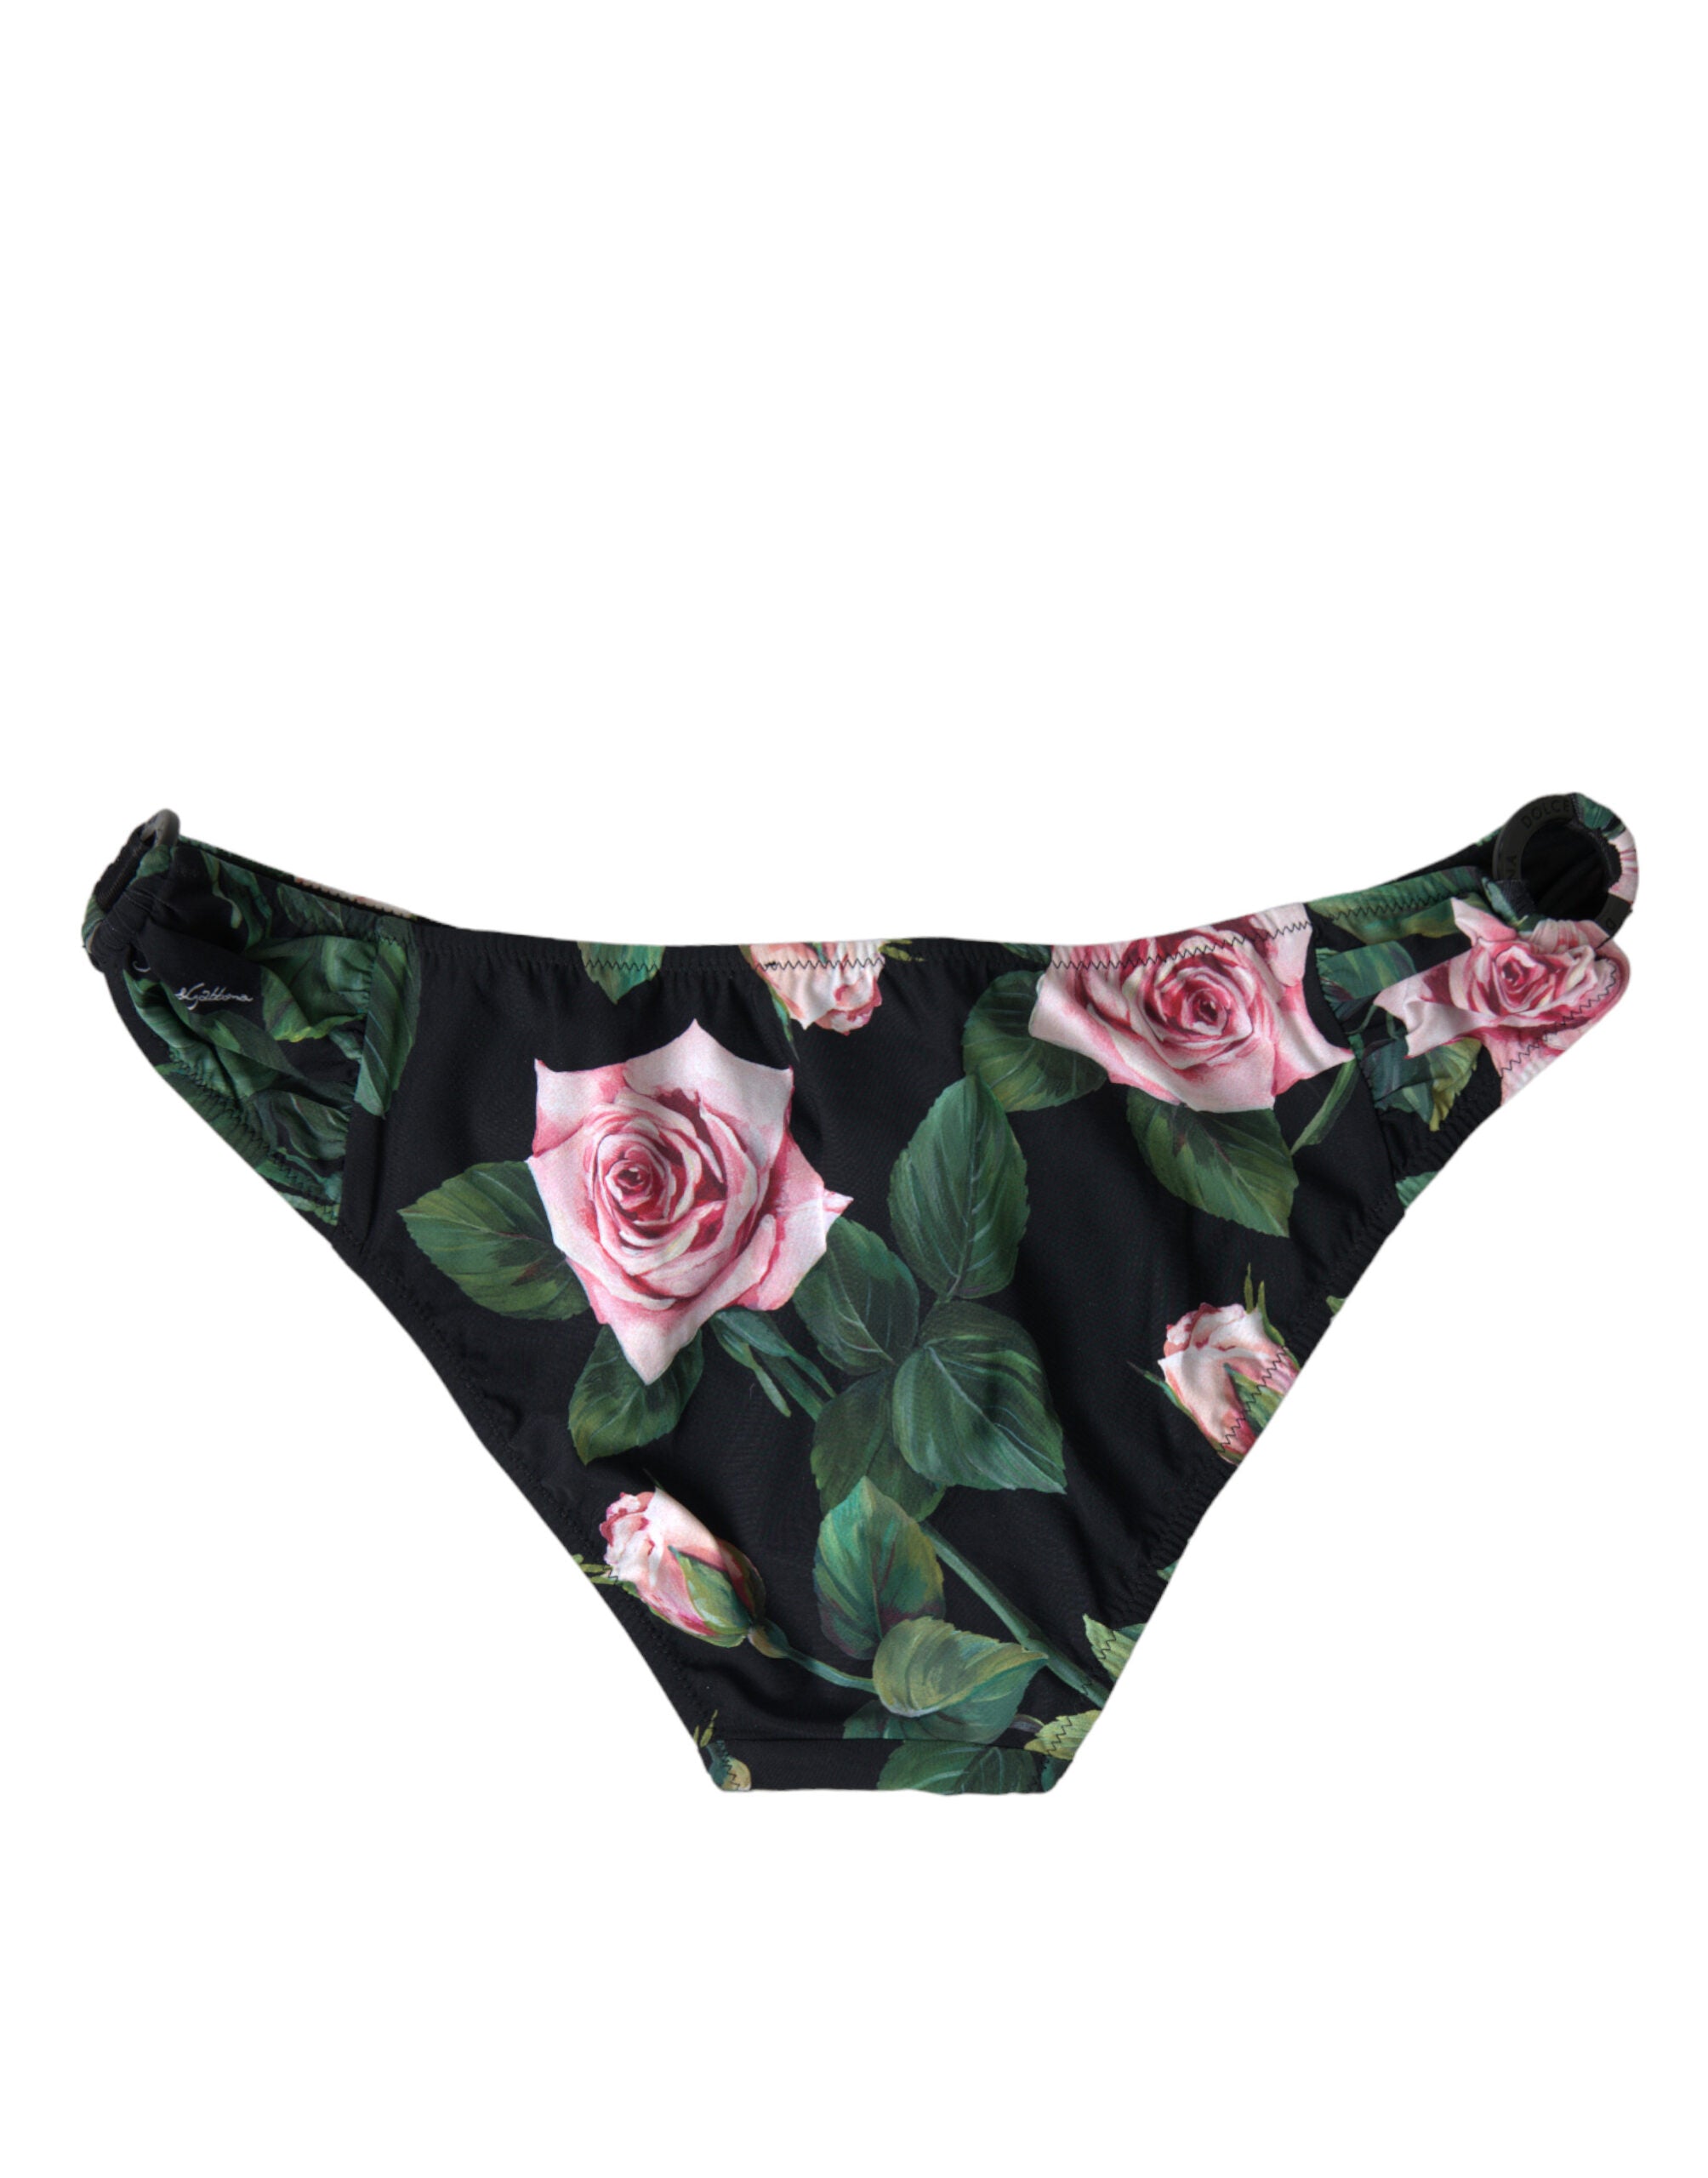 Dolce & Gabbana Chic Floral Print Bikini Bottom